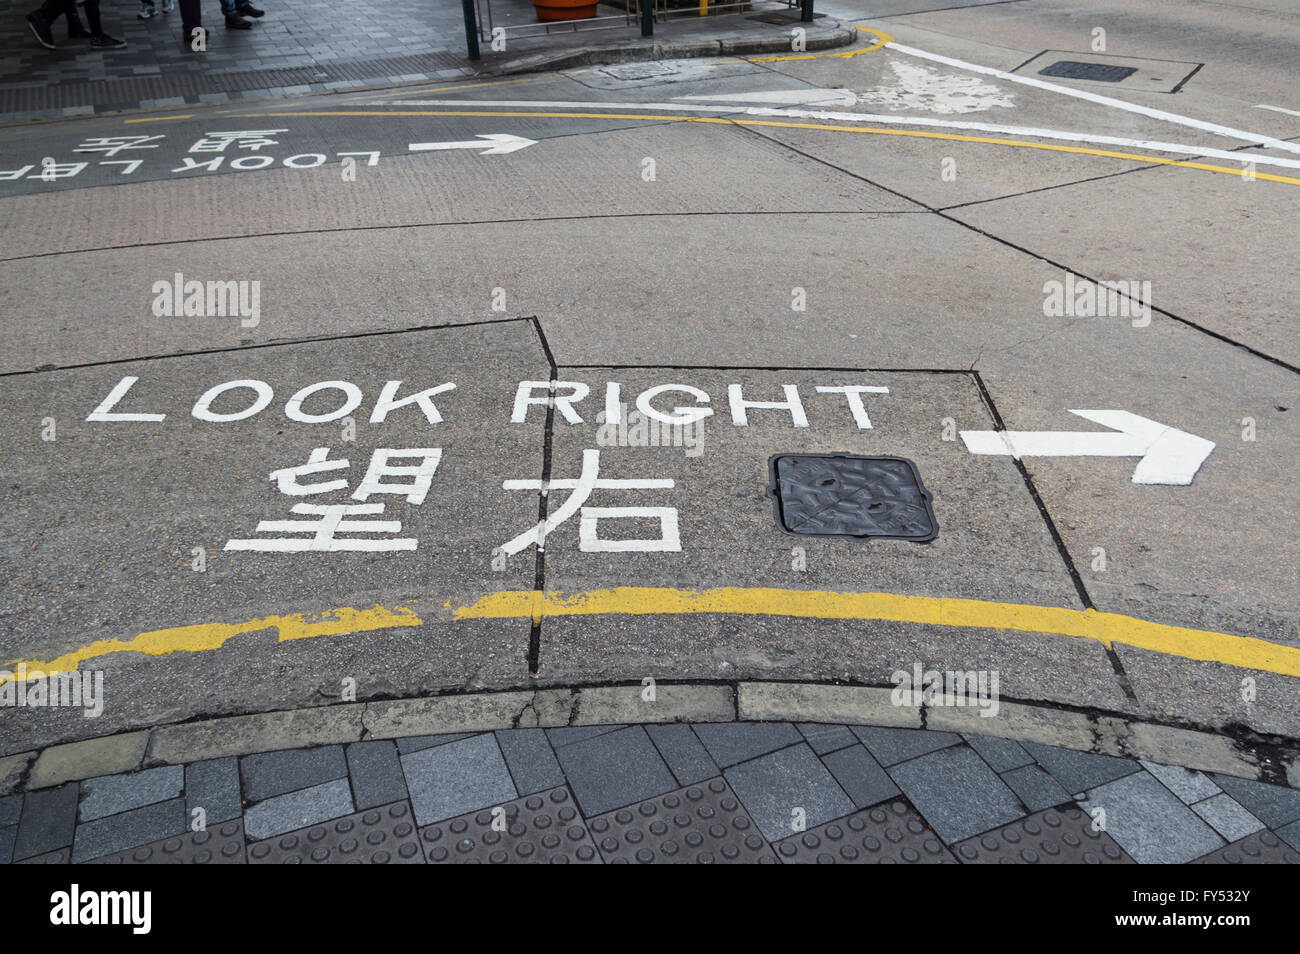 "Look rechts" Schild gemalt auf der Straße in Englisch und Chinesisch, Fußgänger, von welcher, die Seite Straßenverkehr kommt, zu informieren. Stockfoto